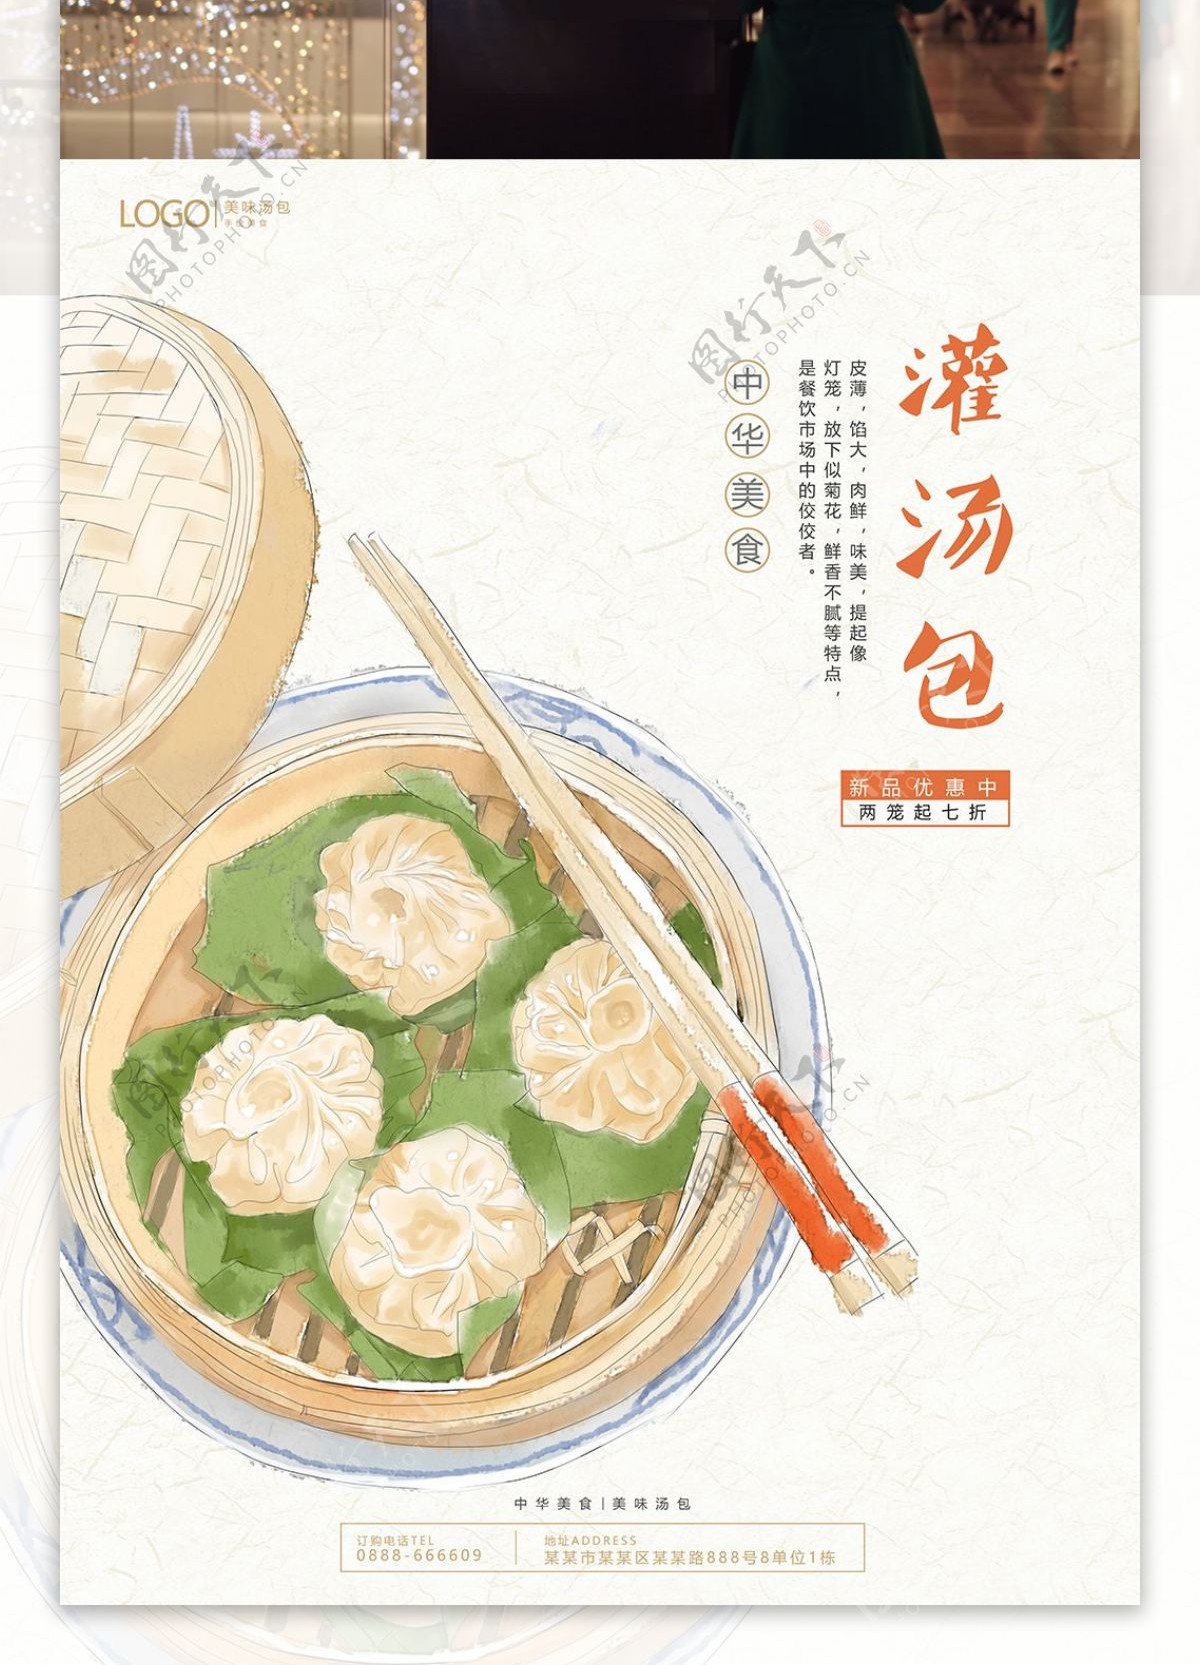 原创插画中国美食灌汤包促销海报